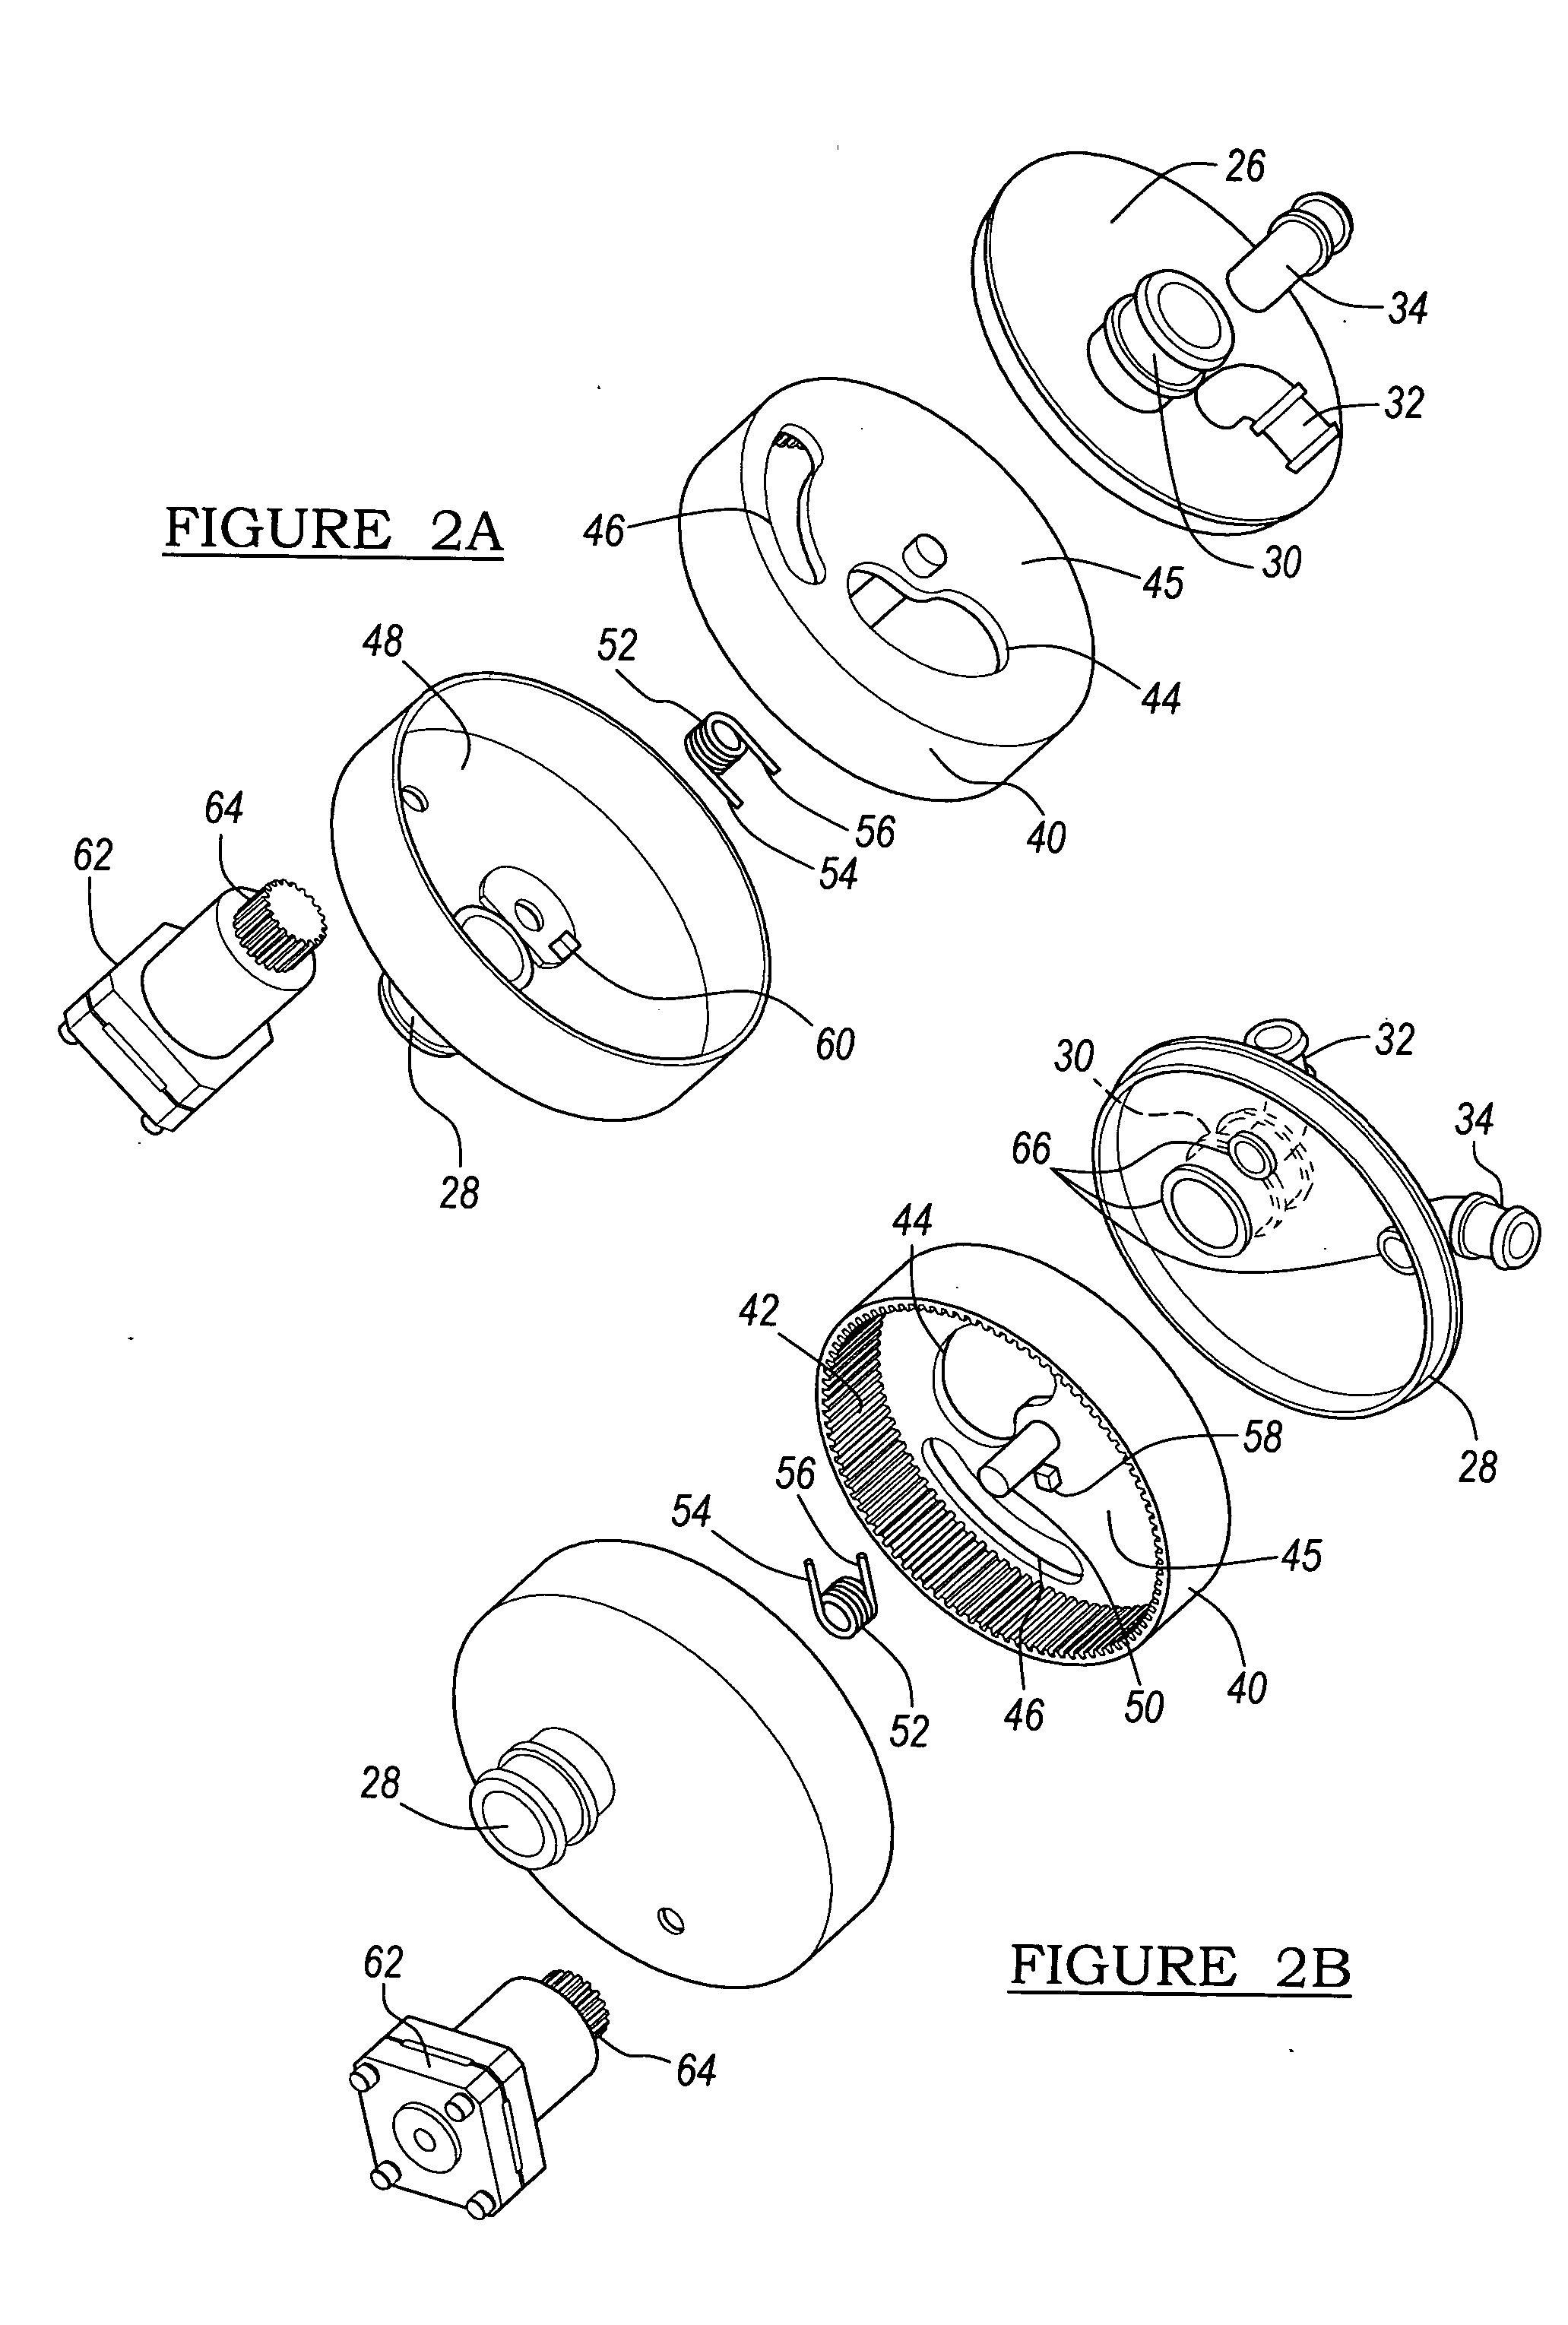 Engine cooling disc valve